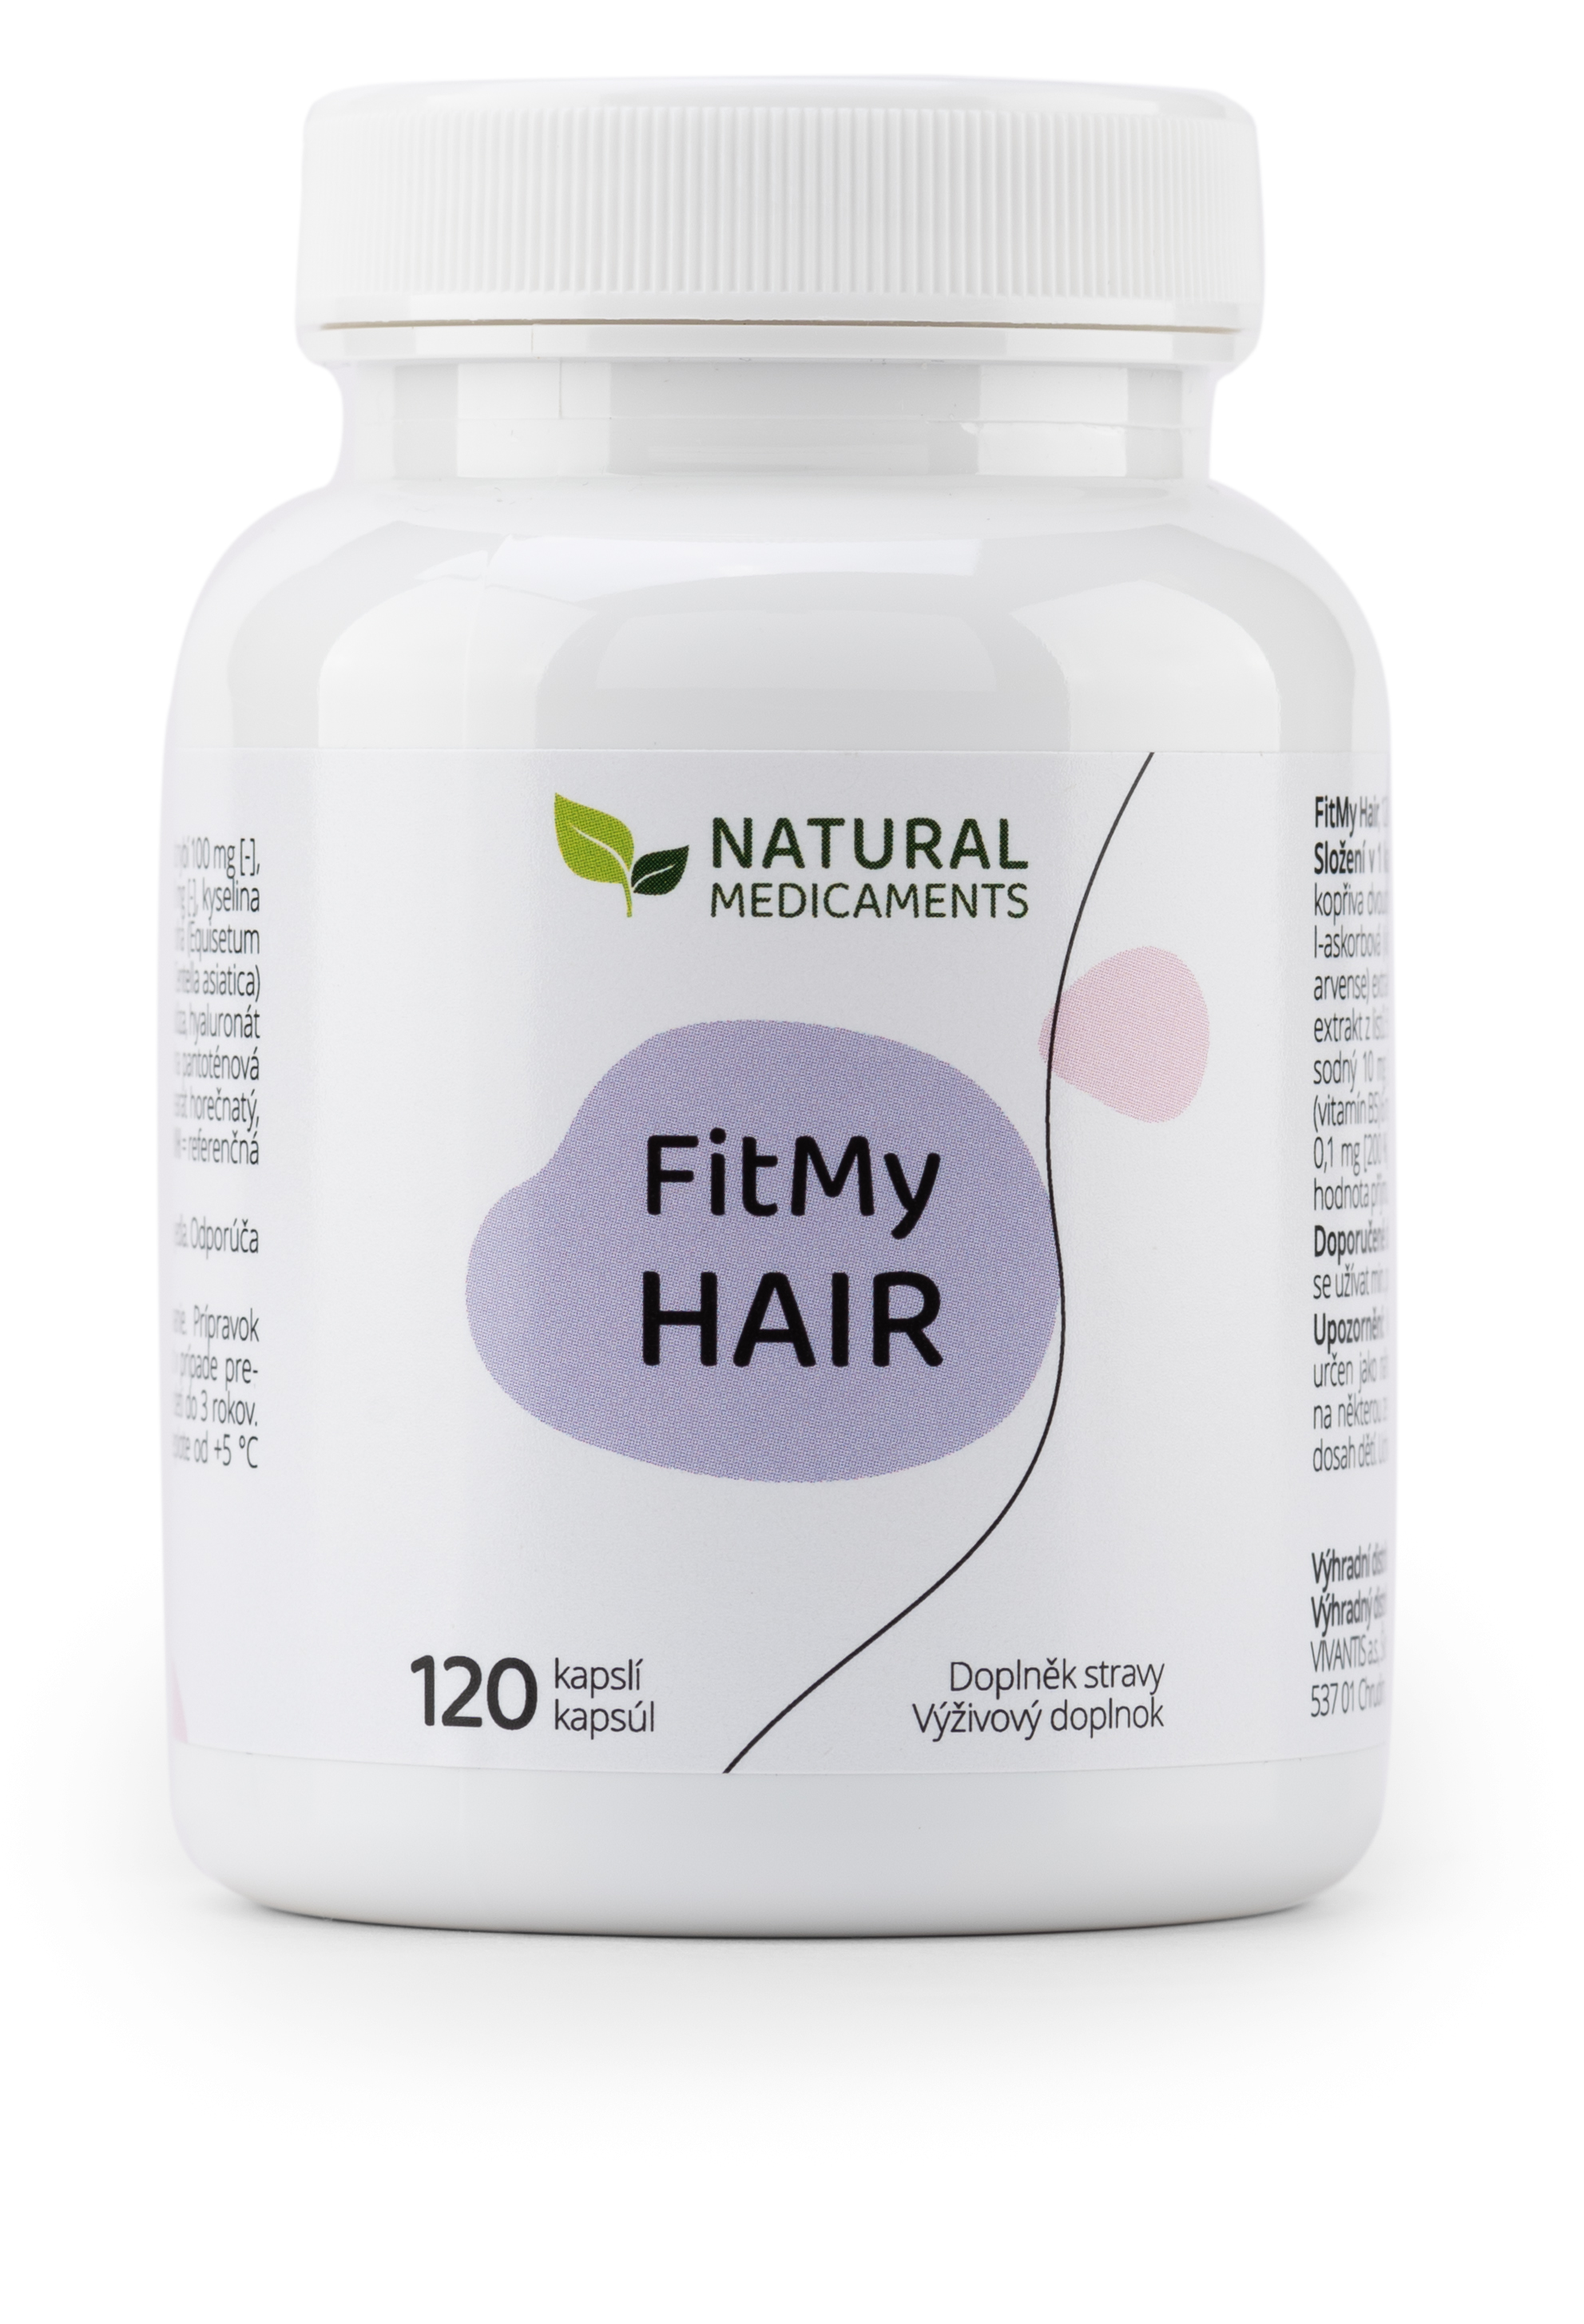 Zobrazit detail výrobku Natural Medicaments FitMy Hair pro zdravé a krásné vlasy 120 kapslí